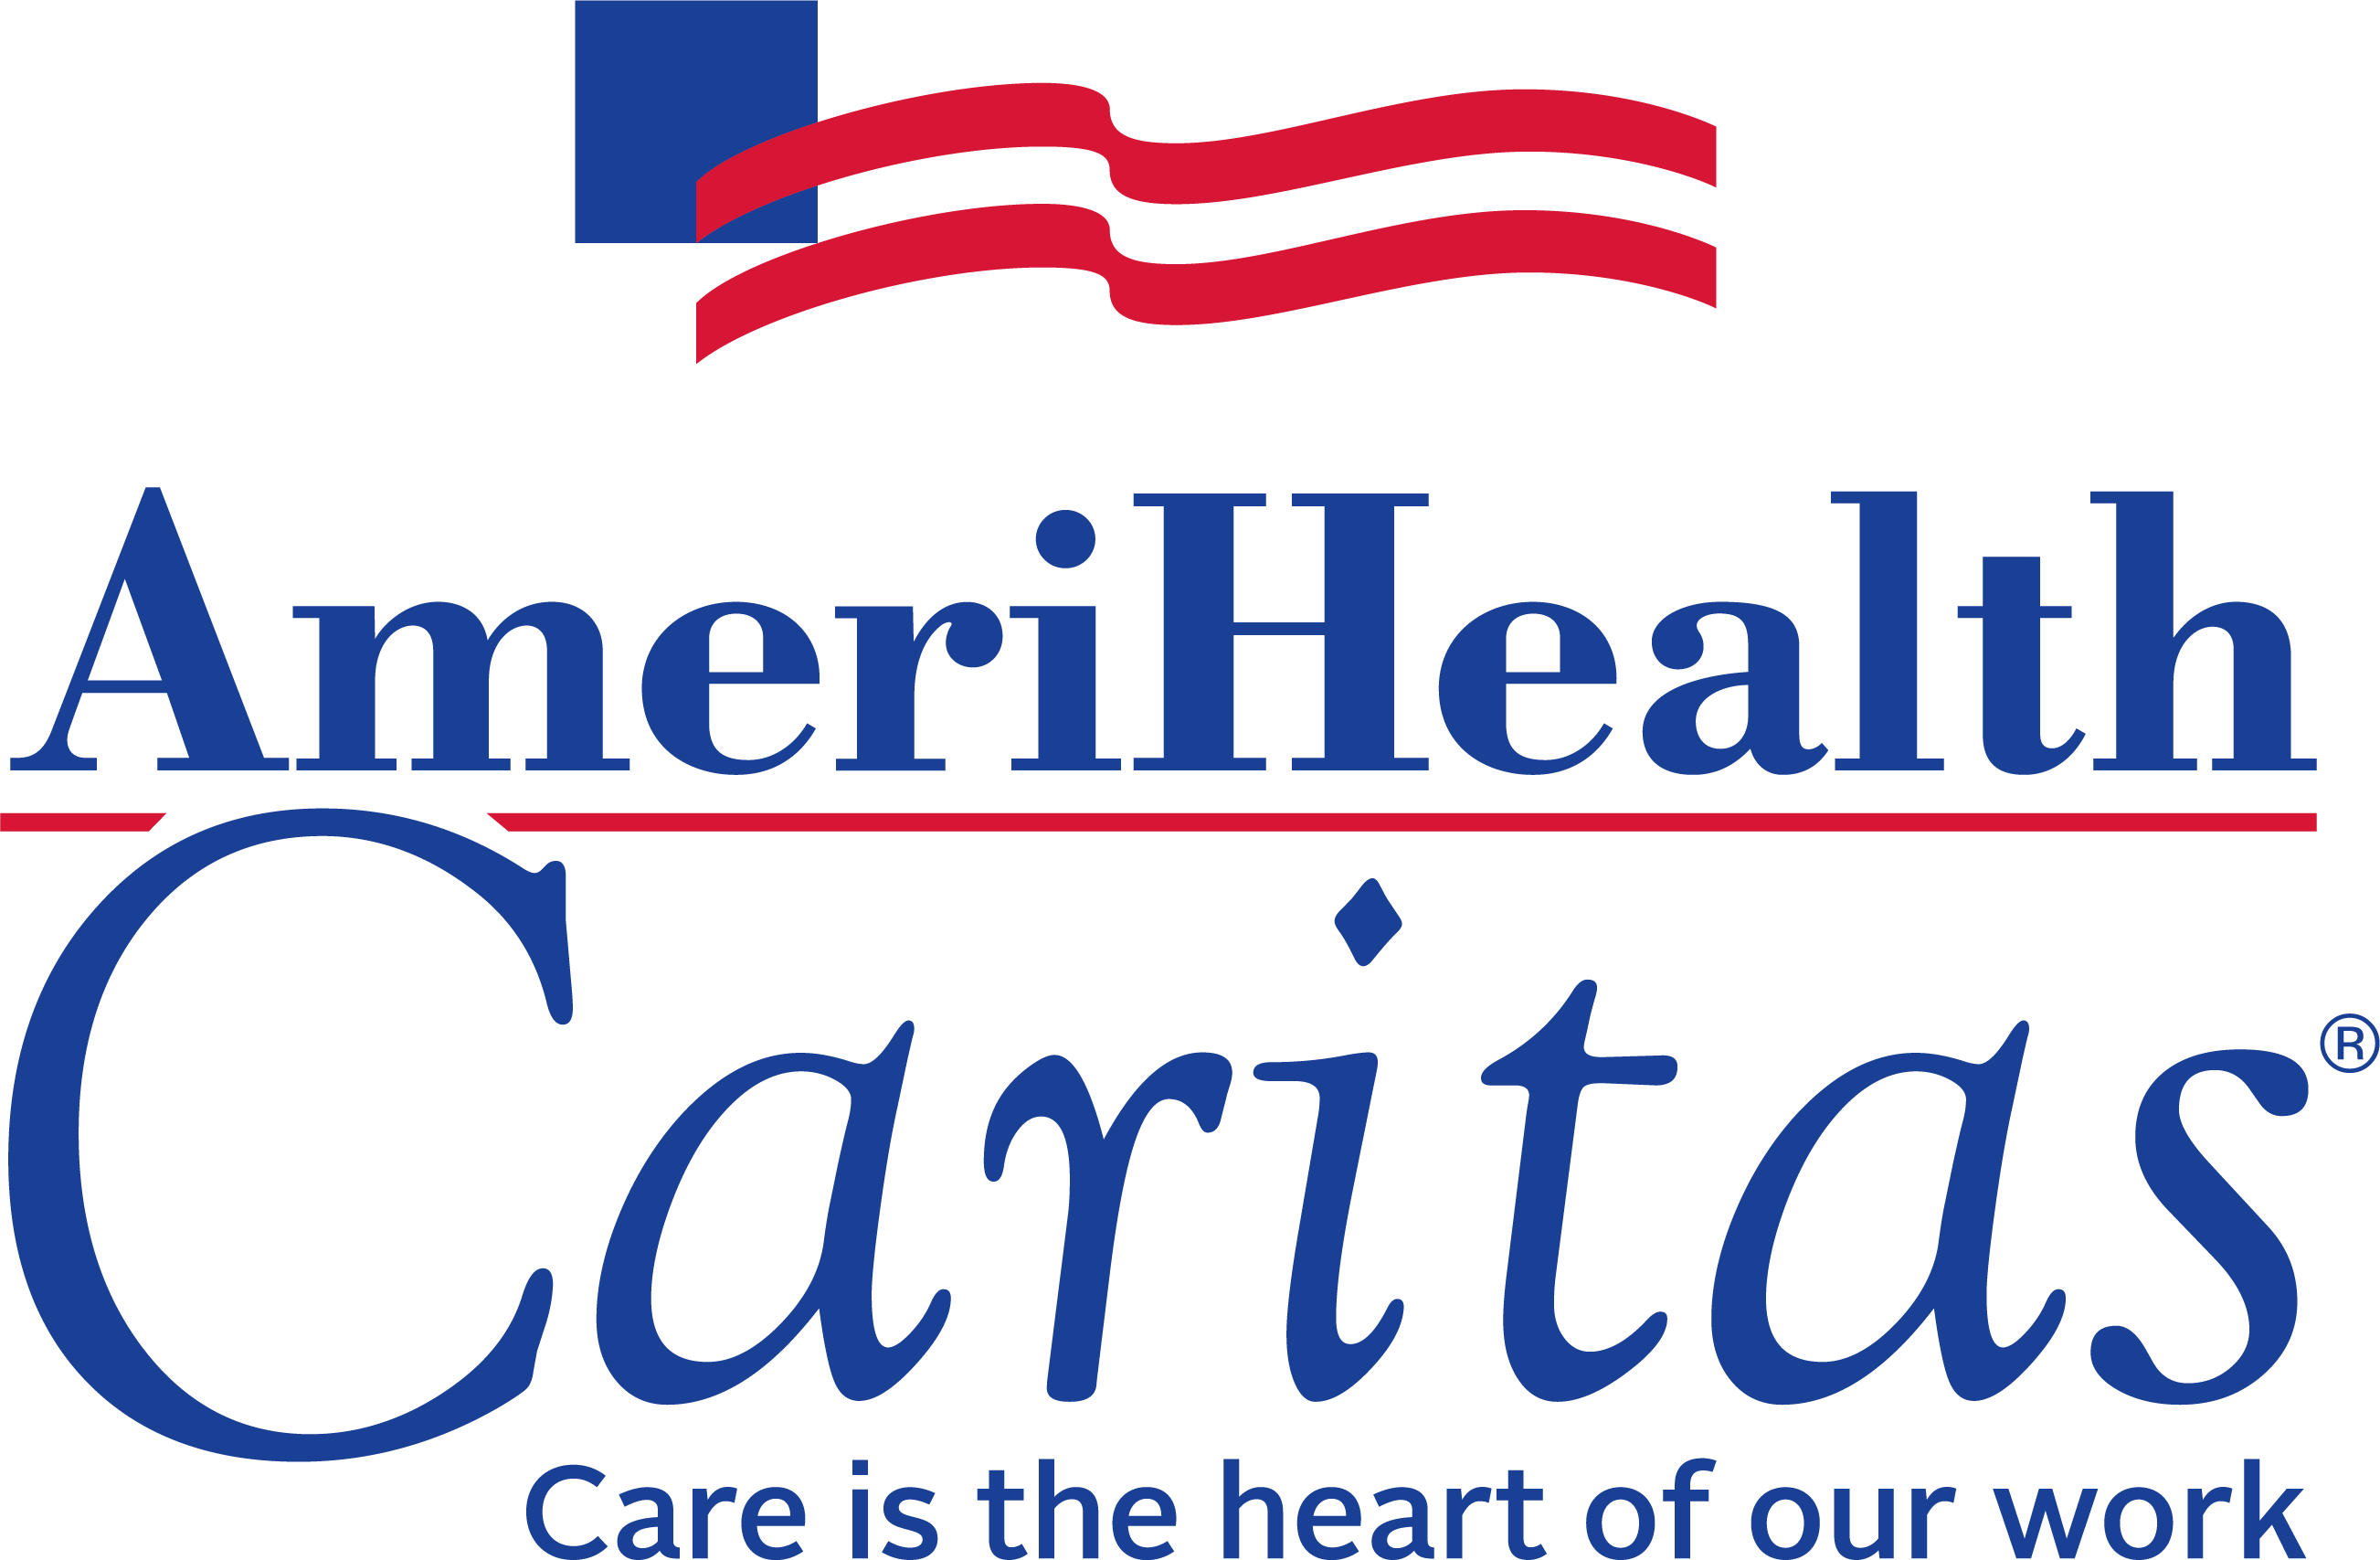 AmeriHealth Caritas